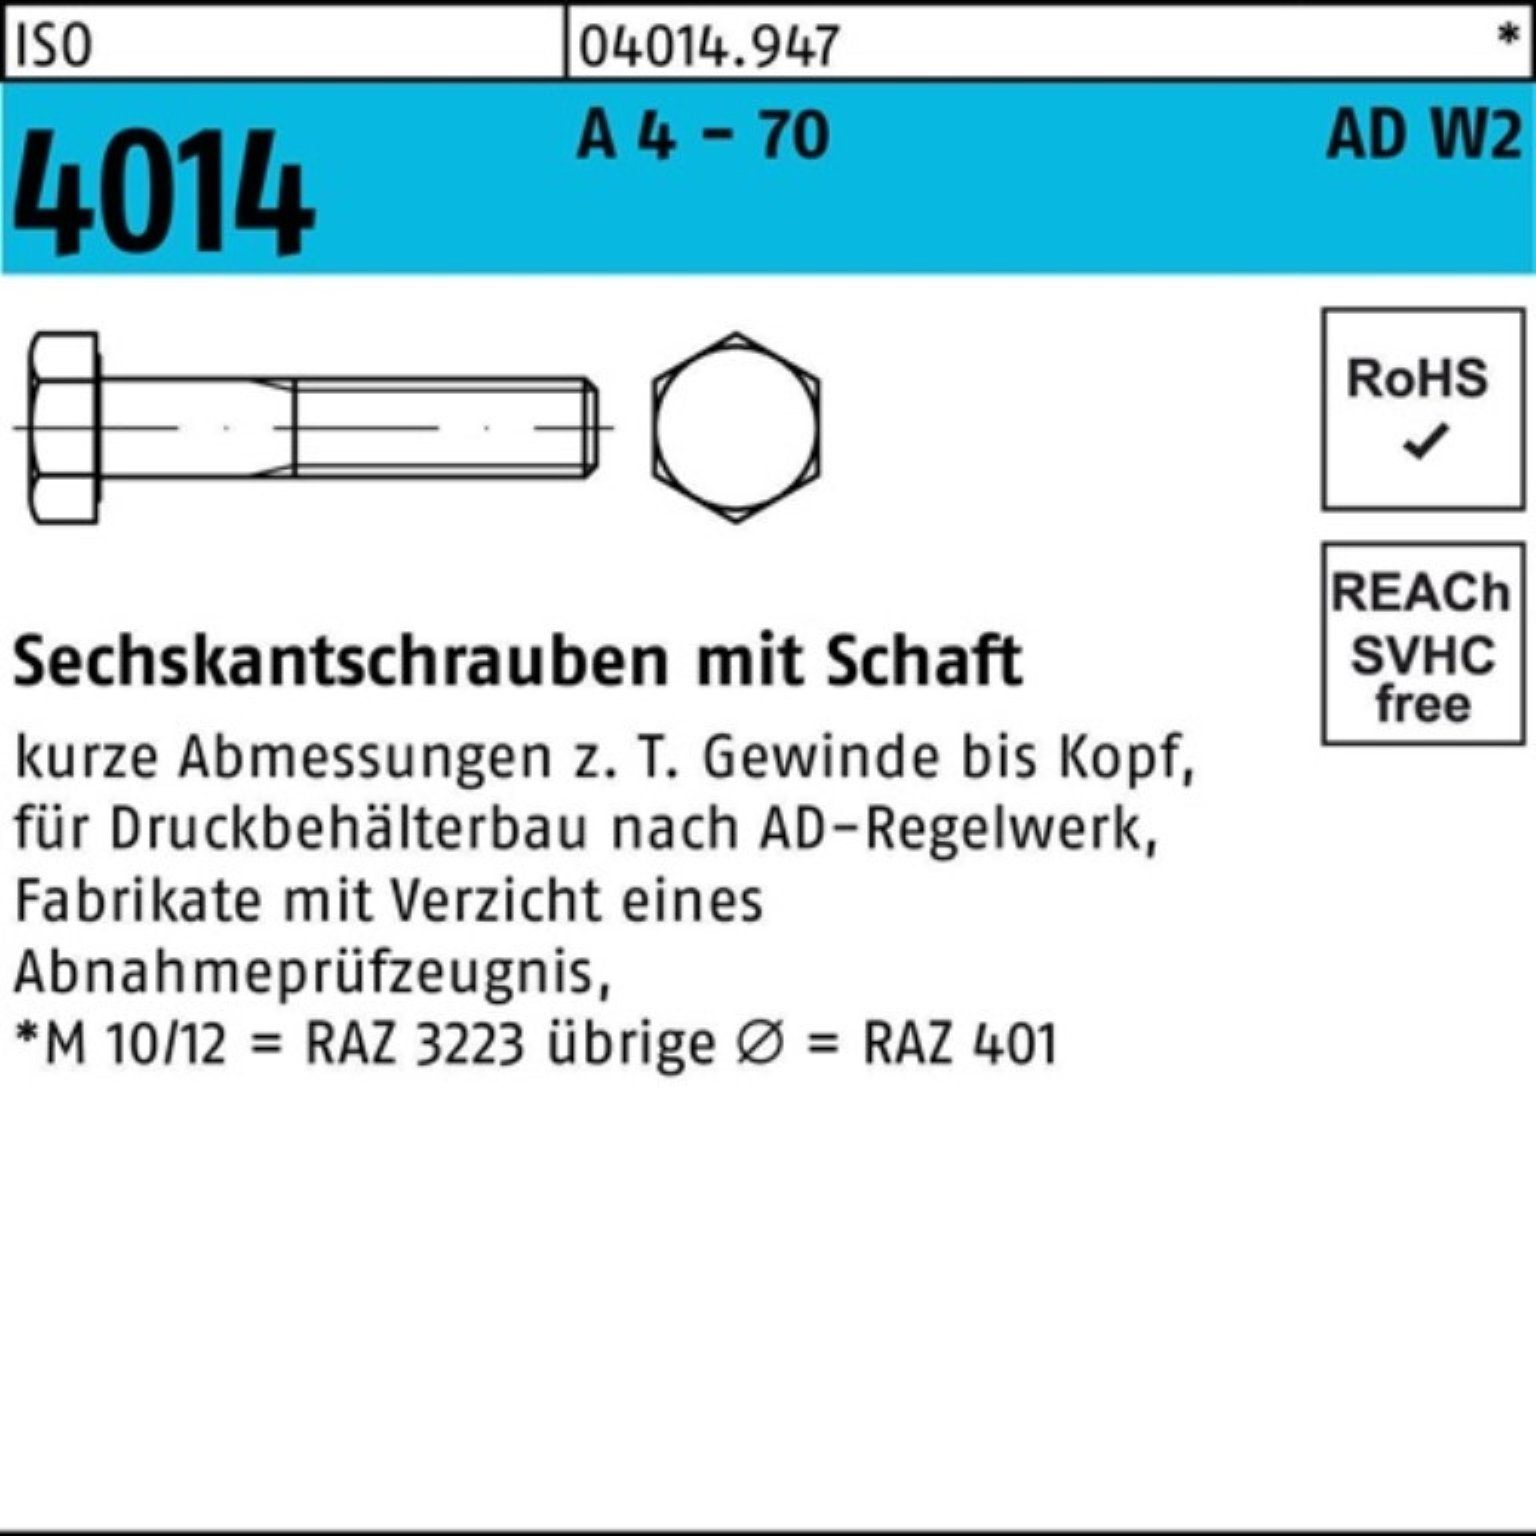 Bufab Sechskantschraube 100er Pack Sechskantschraube ISO 4014 Schaft M24x 110 A 4 - 70 AD-W2 1